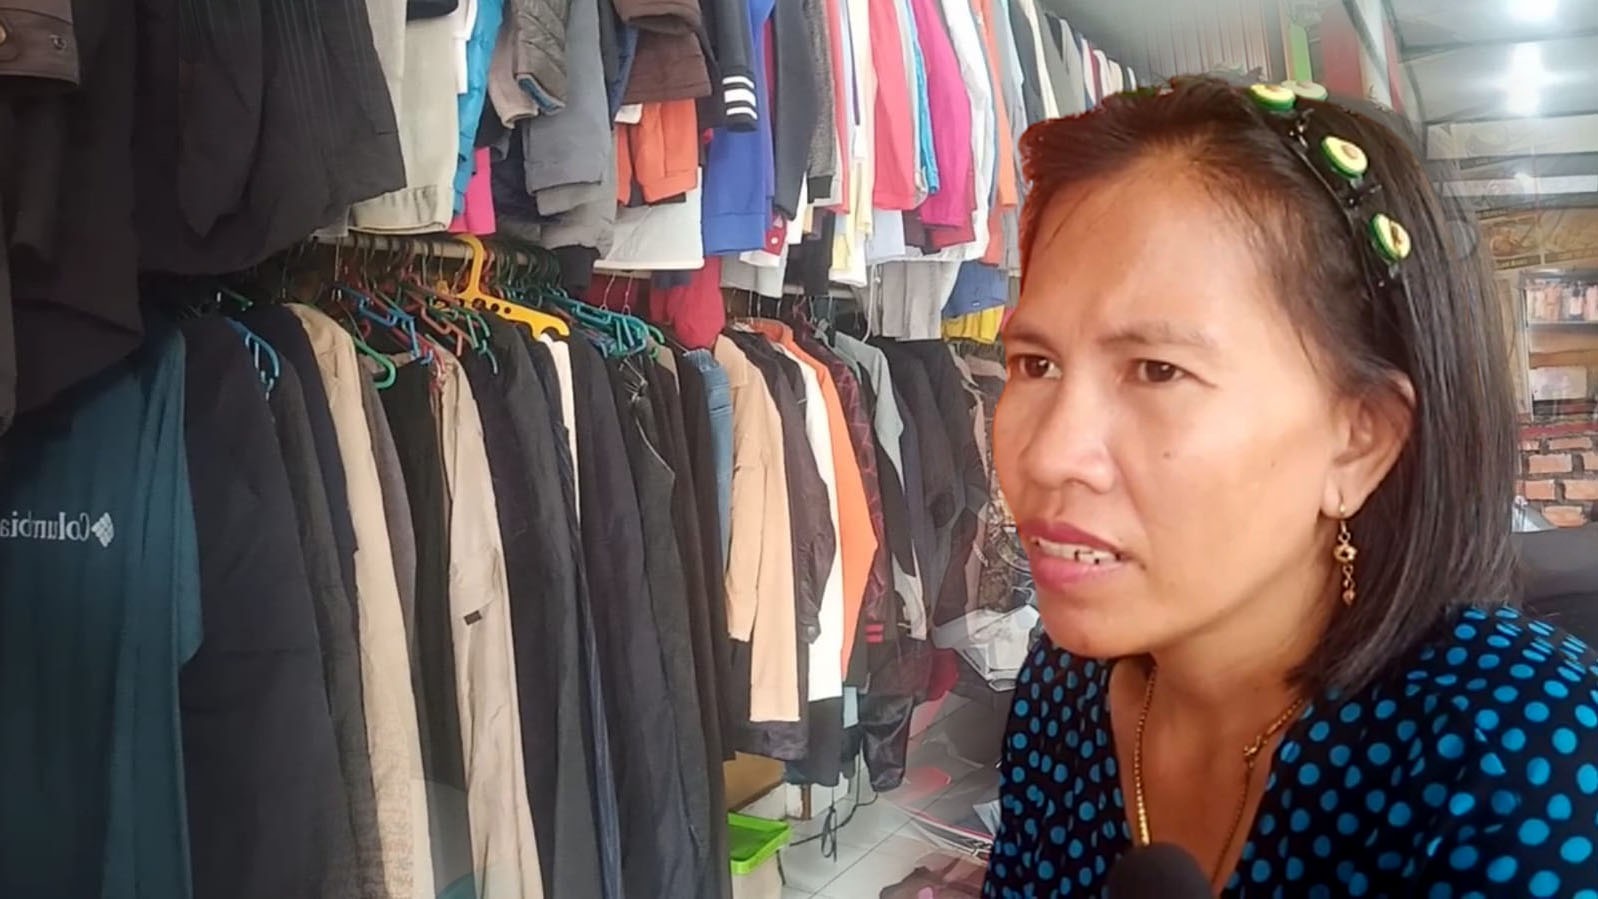 Penjual Pakaian BJ di Lubuklinggau Takut Razia, Kapolres: Bisa Membahayakan Kesehatan